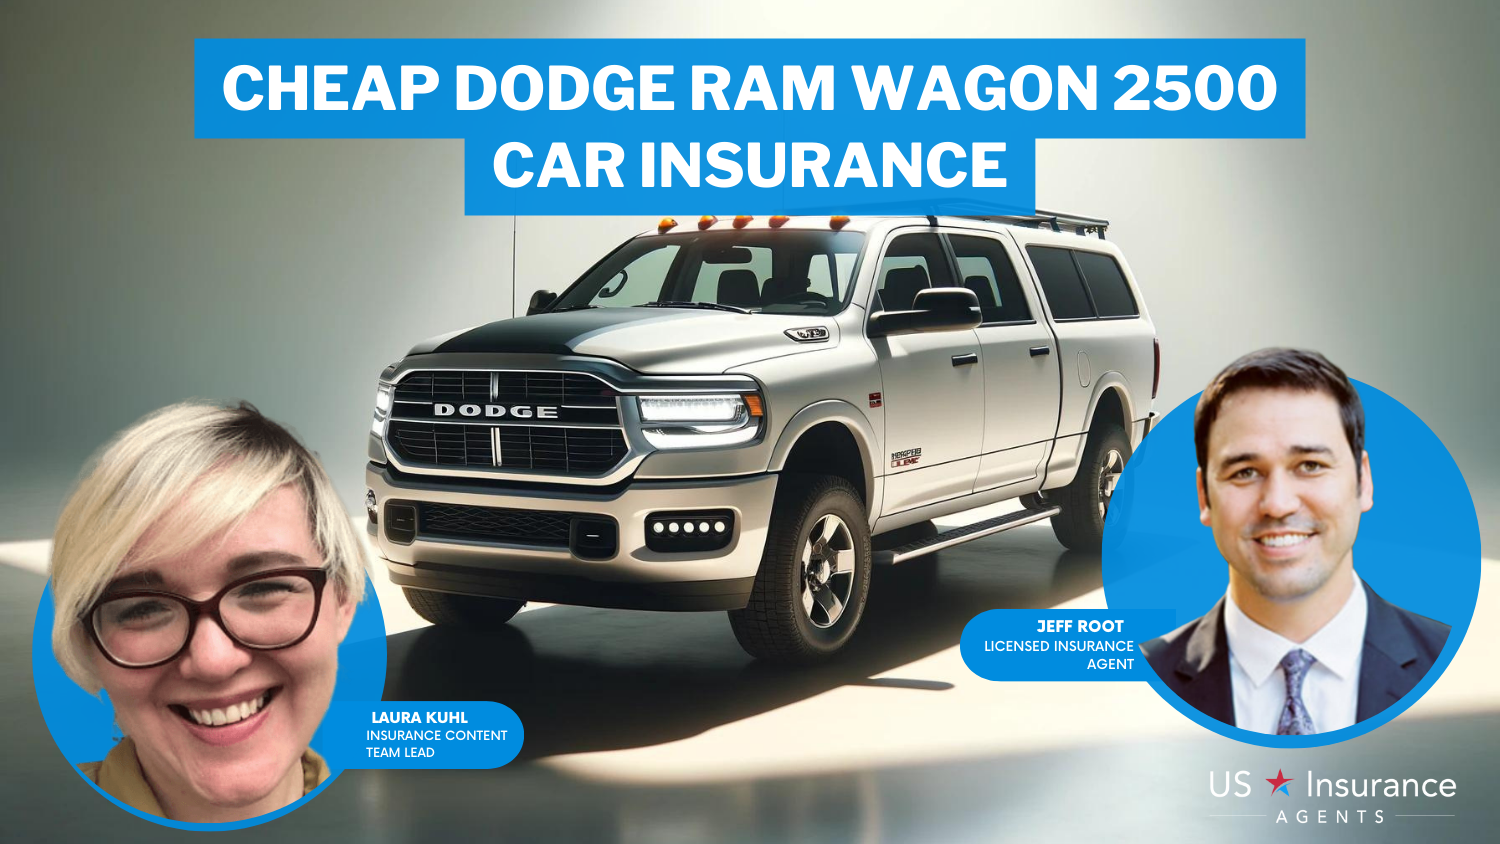 Cheap Dodge Ram Wagon 2500 Car Insurance